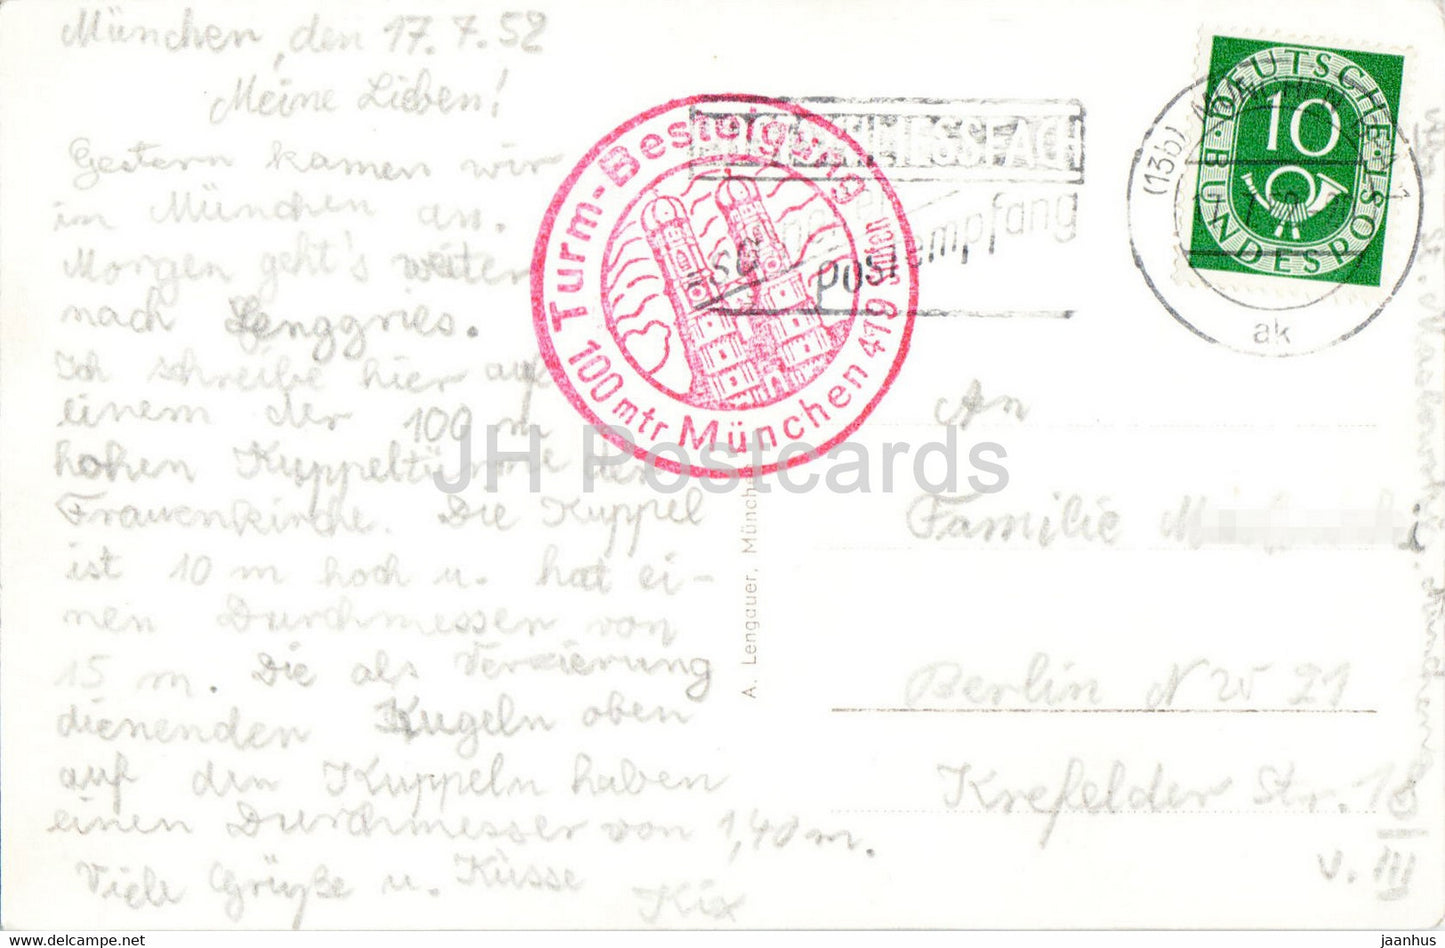 Munchen - Karlsplatz - Armeemuseum - Deutsches Museum - Feldherrnhalle - carte postale ancienne - 1952 - Allemagne - utilisé